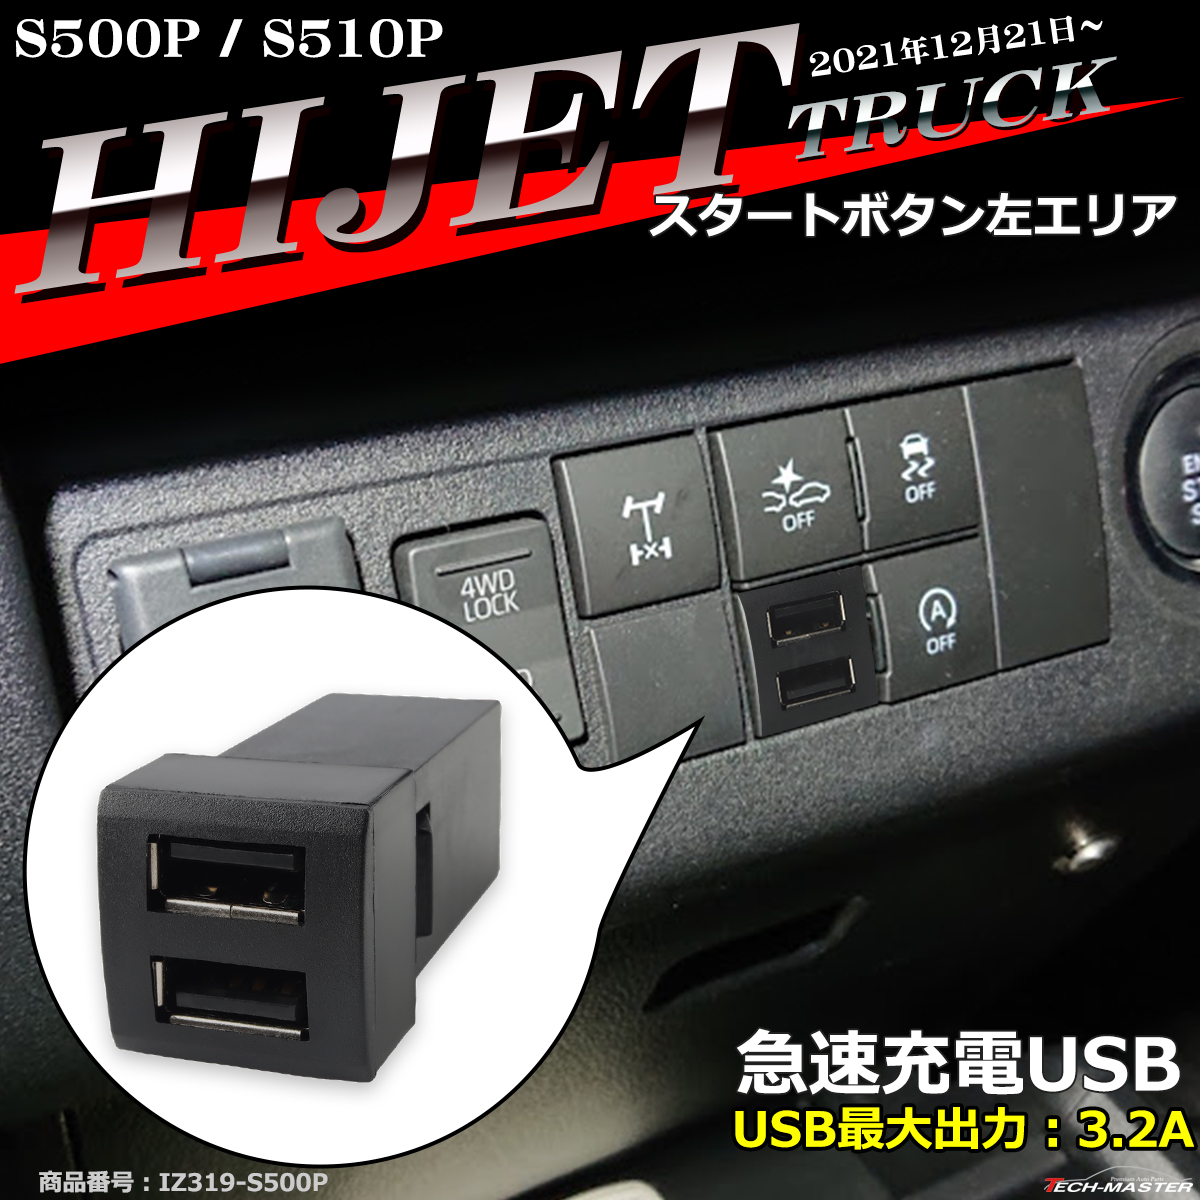 純正風 ハイゼットトラック USB 2ポート S500P S510P 後期 ハイゼットトラックジャンボ 増設用 適合詳細は画像に掲載 IZ319